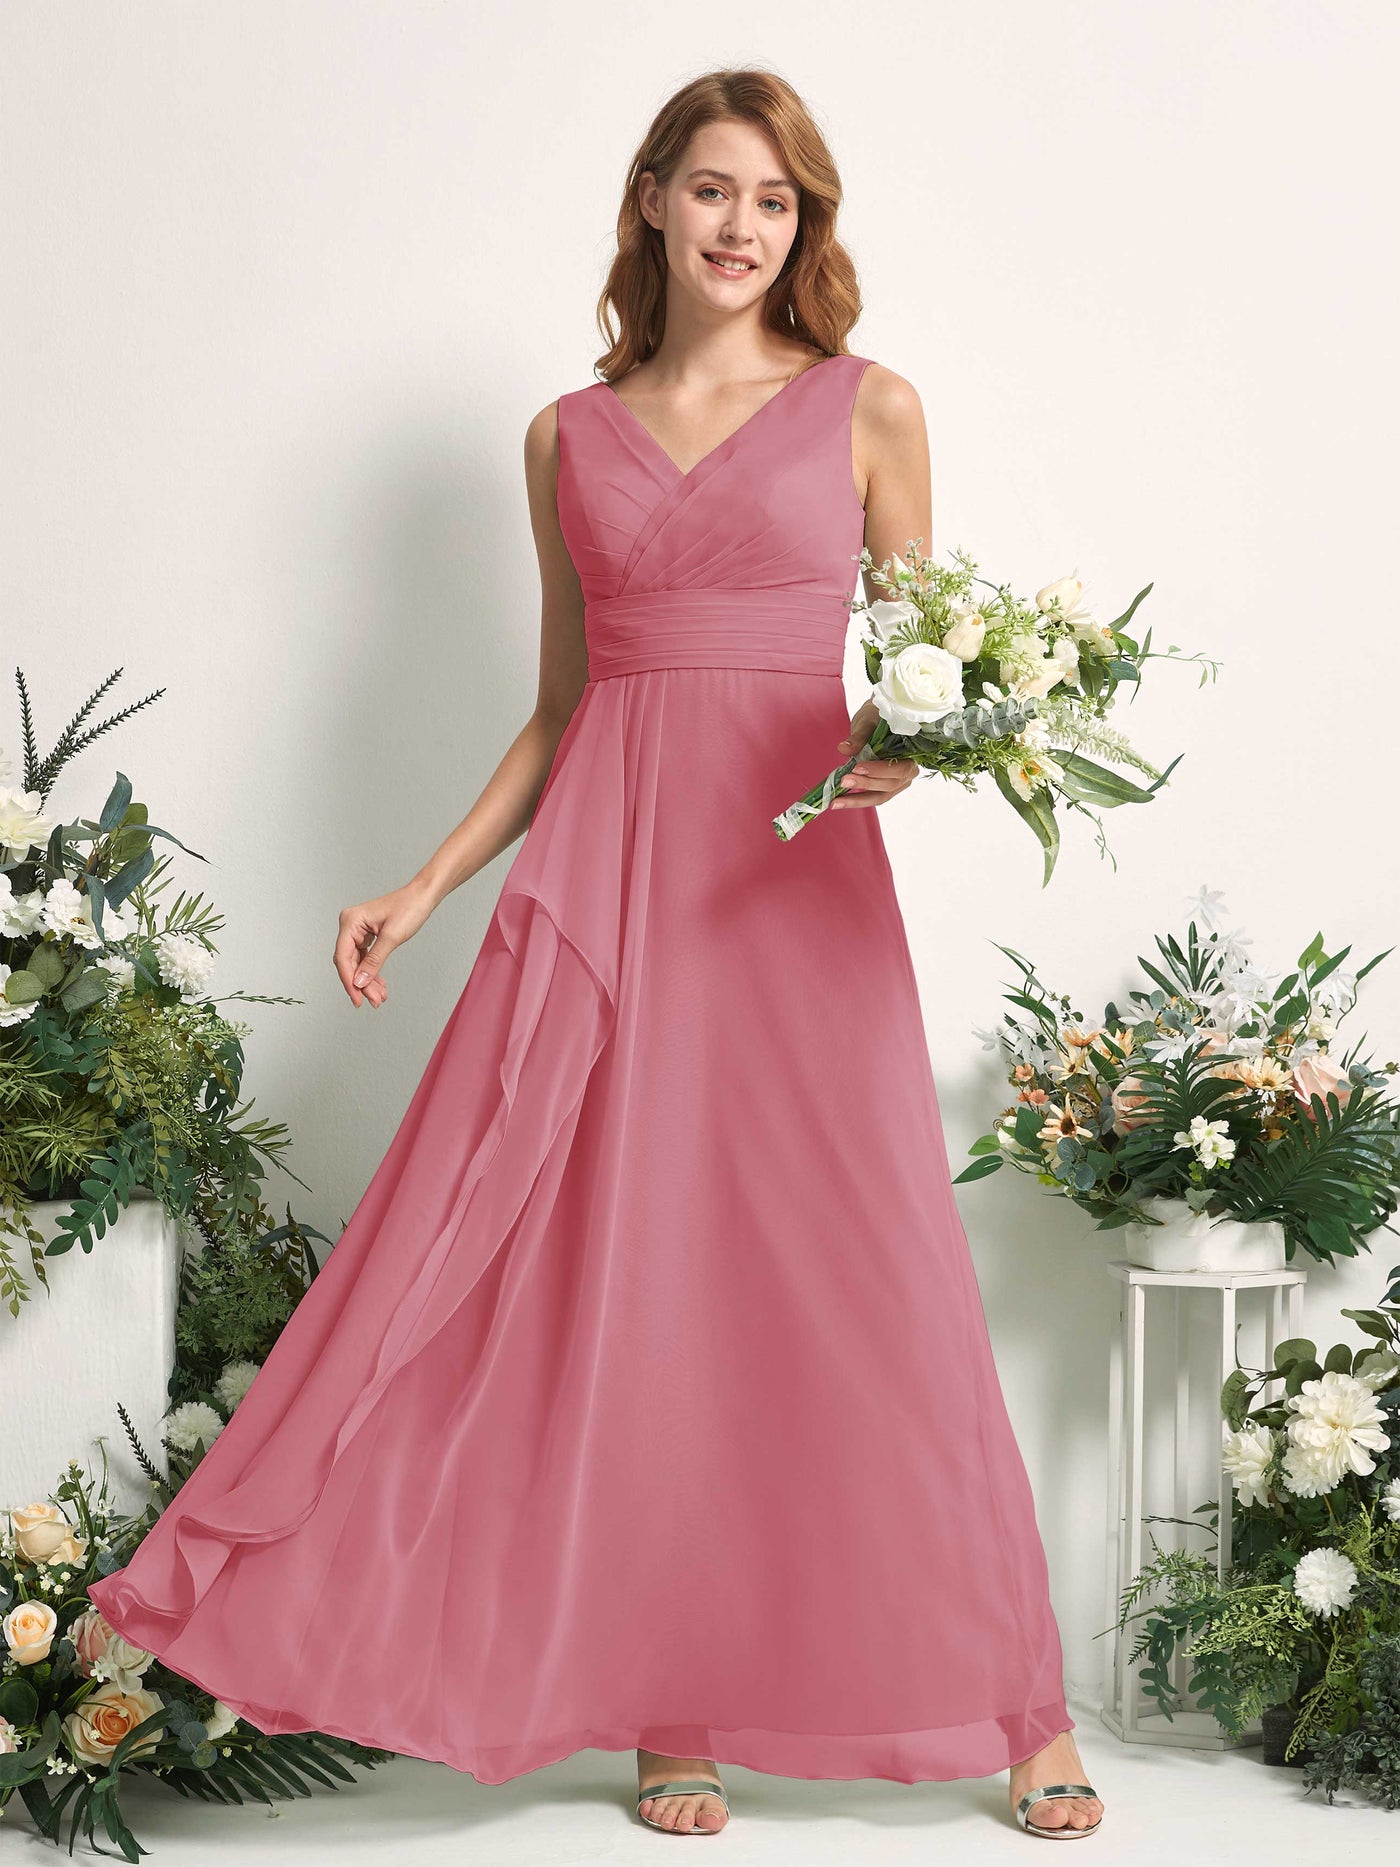 Bridesmaid Dress A-line Chiffon V-neck Full Length Sleeveless Wedding Party Dress - Desert Rose (81227111)#color_desert-rose